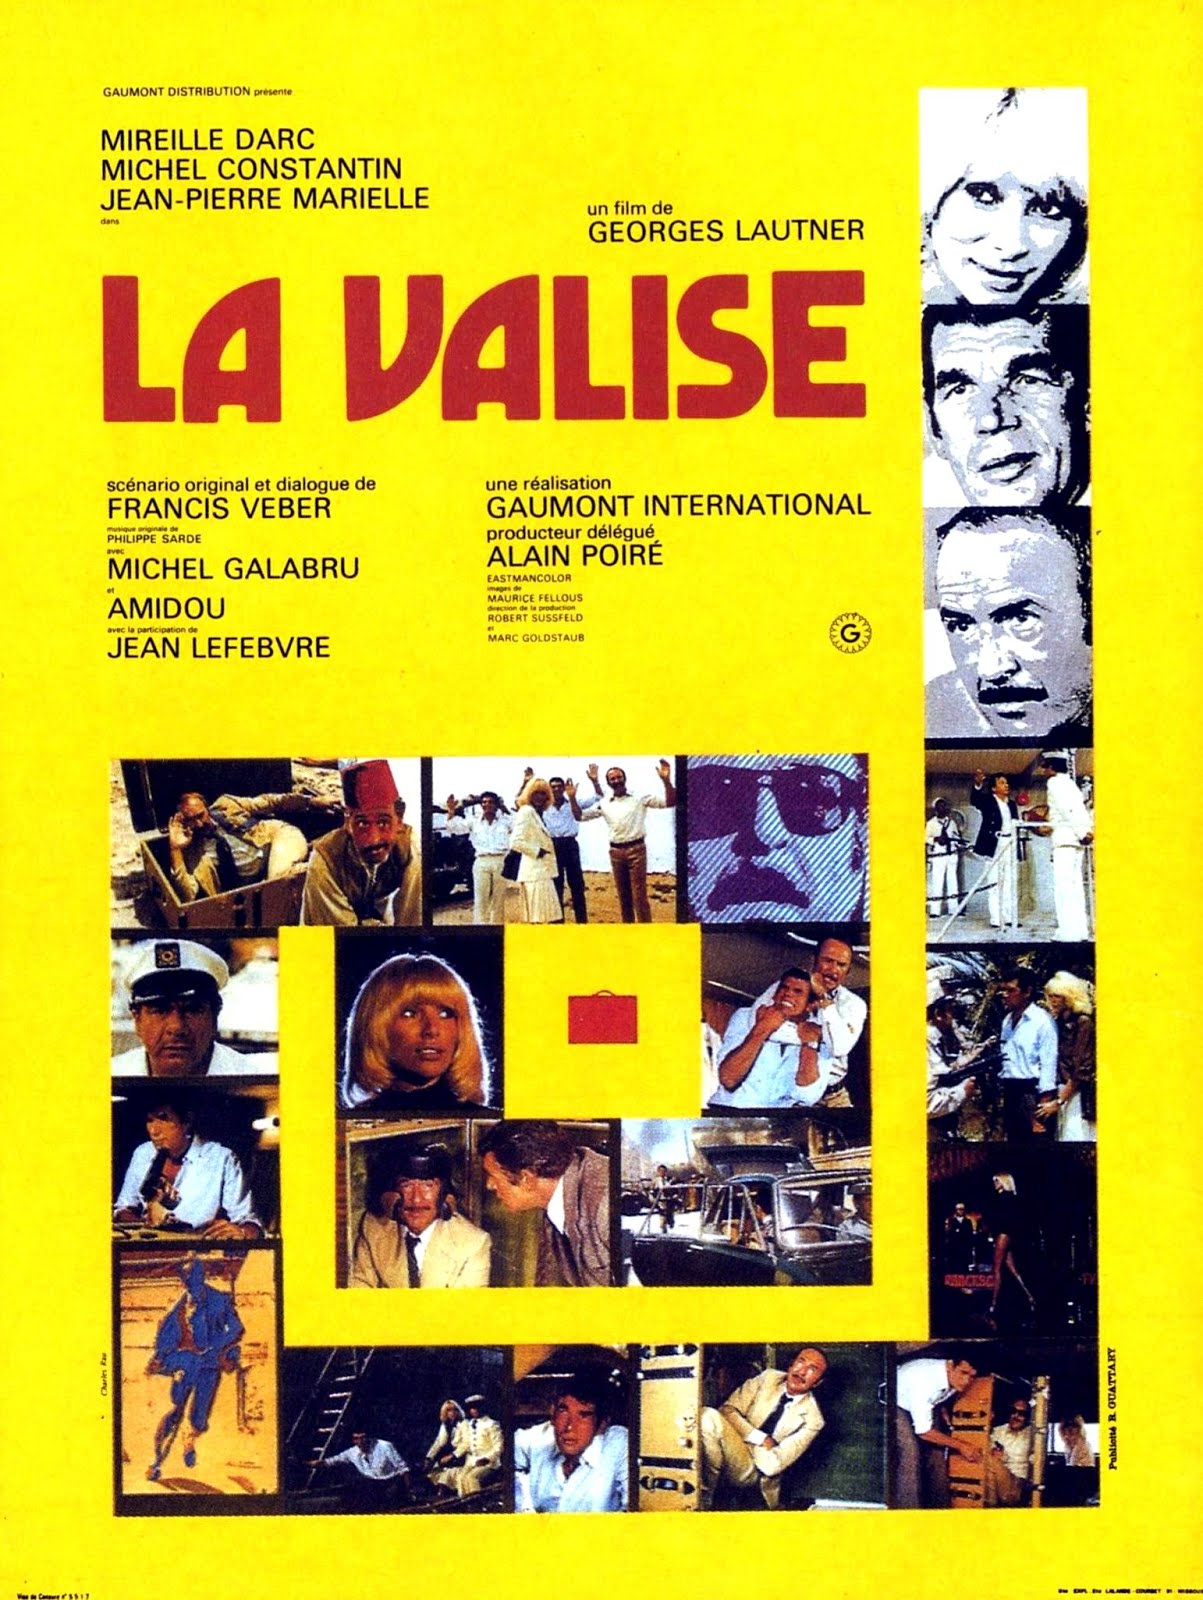 La valise (1973) Georges Lautner - La valise